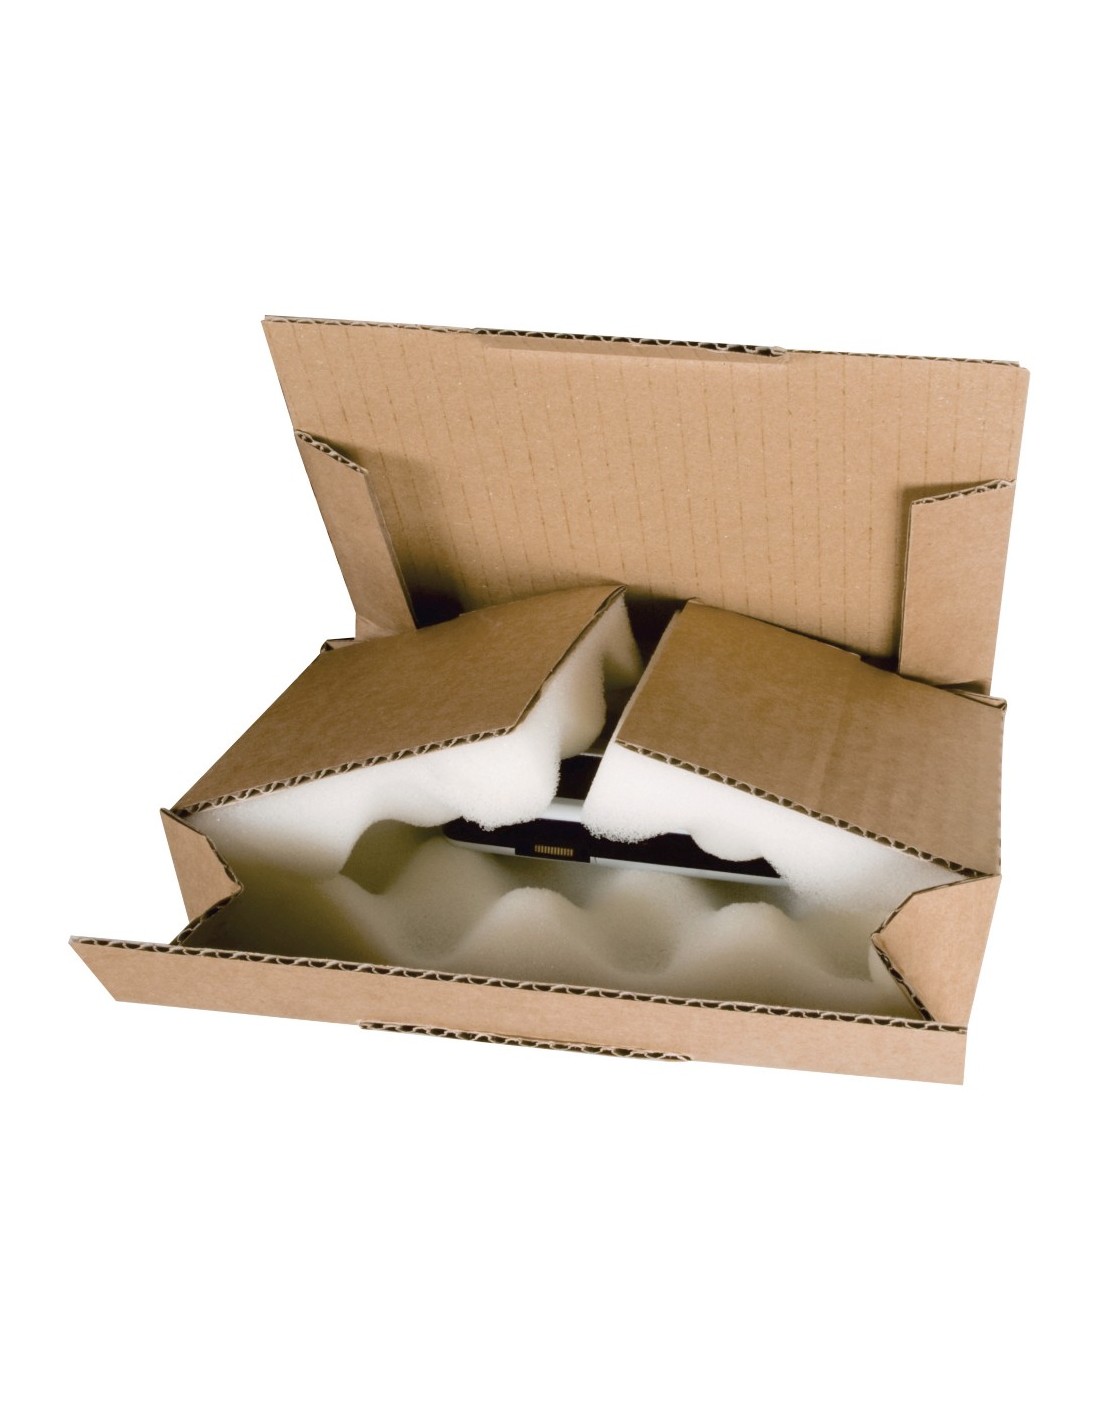 Boîte Expédition Protection En Mousse, Bam Emballages